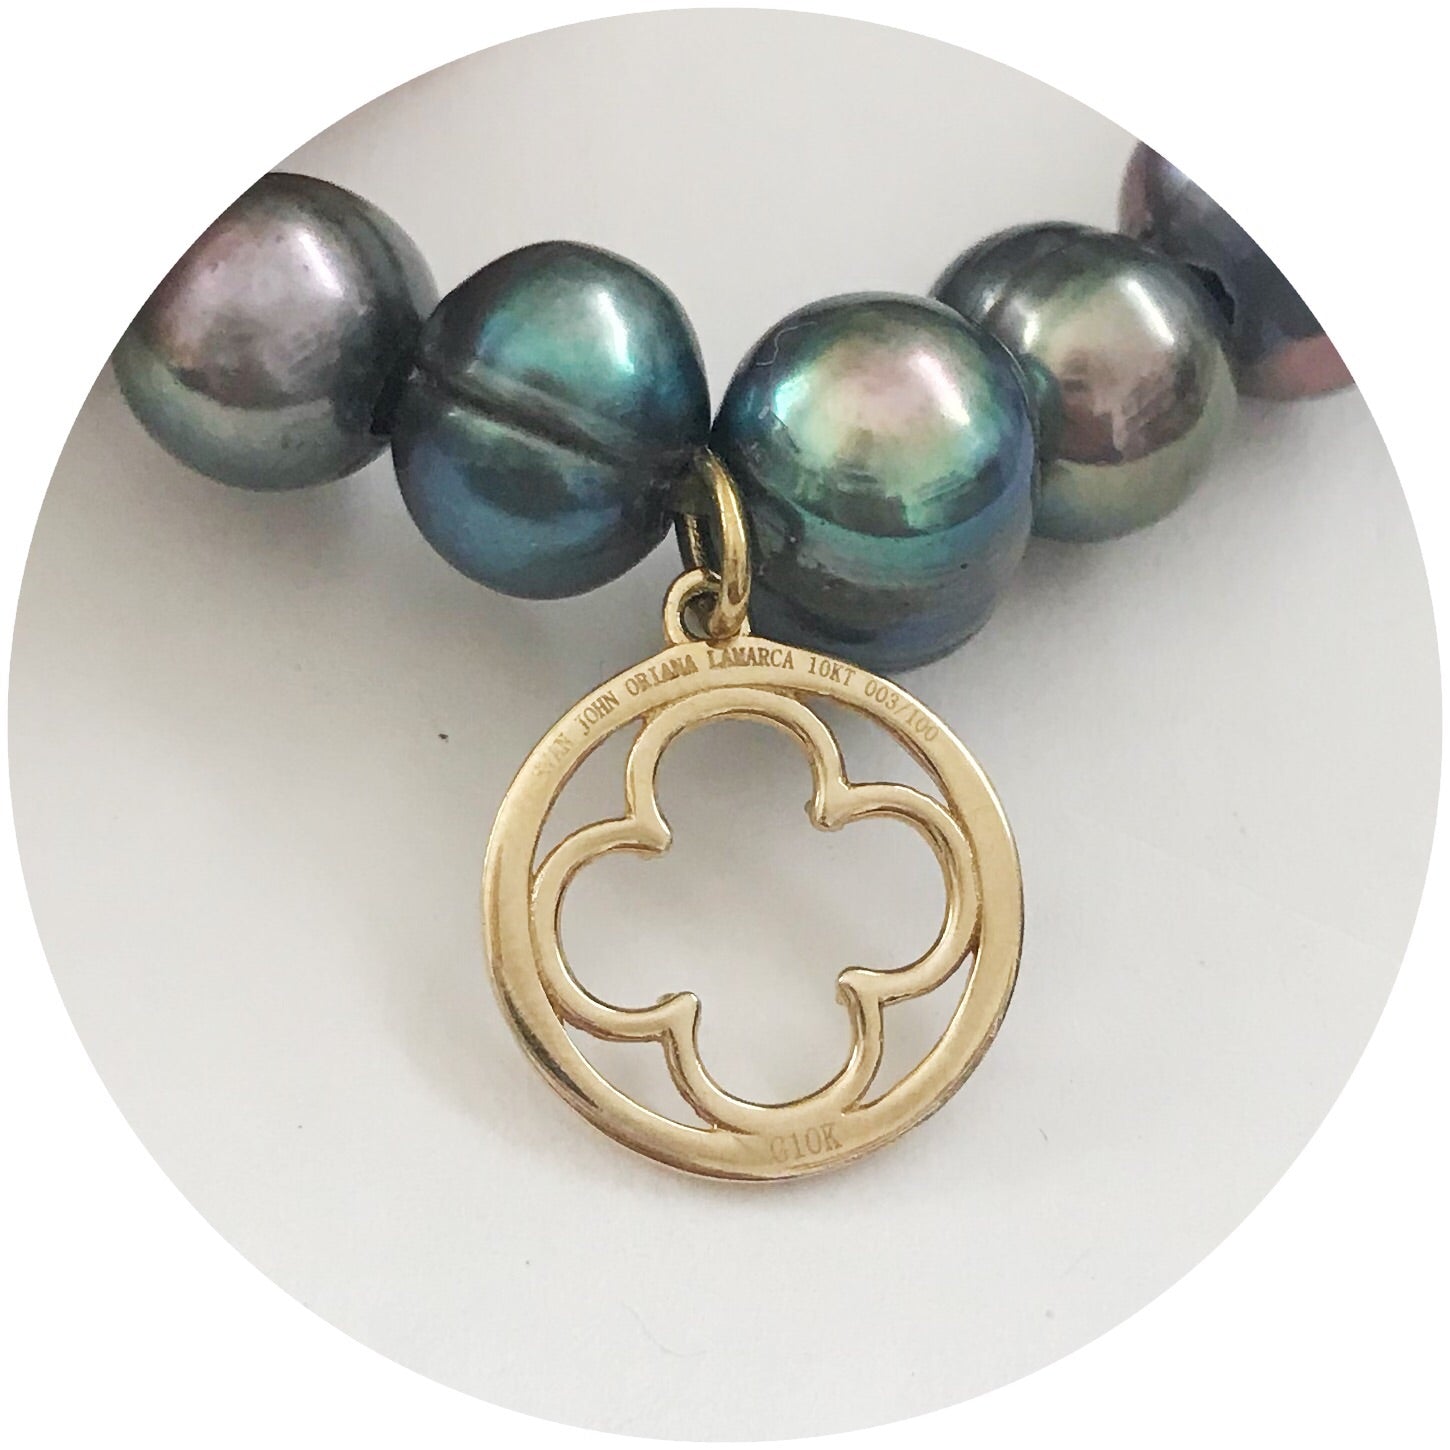 EJ X OL Freshwater Gris Pearls with Pendant - Oriana Lamarca LLC